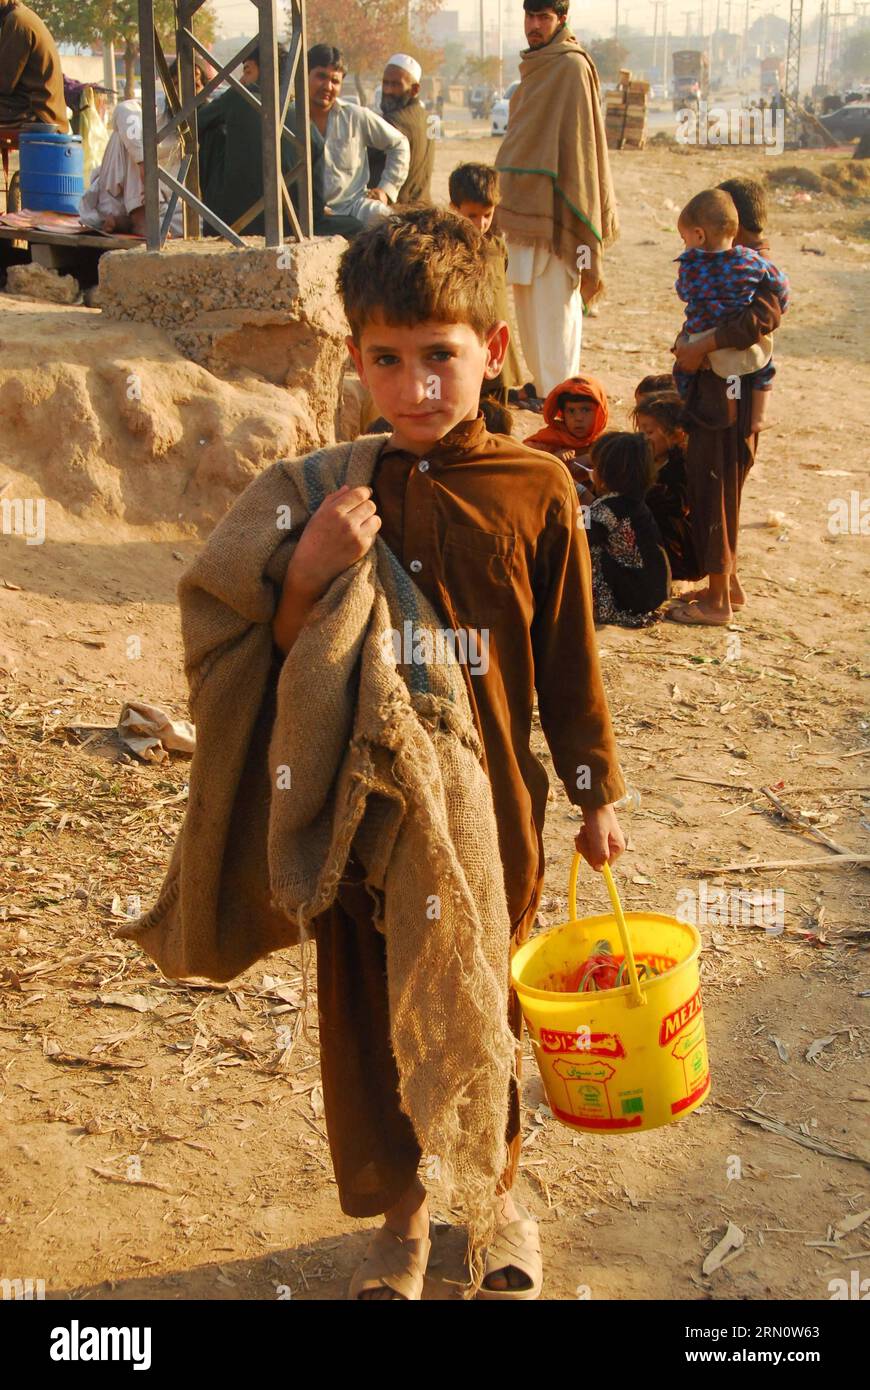 (141120) -- ISLAMABAD, 20 novembre 2014 -- Un garçon pakistanais marche dans une rue dans un bidonville à l'occasion de la Journée universelle de l'enfance à Islamabad, capitale du Pakistan, le 20 novembre 2014. La Journée universelle de l enfant, qui tombe le 20 novembre de chaque année, marque l anniversaire du jour où l Assemblée générale des Nations Unies a adopté la Déclaration des droits de l enfant en 1959 et la Convention relative aux droits de l enfant en 1989. ) PAKISTAN-ISLAMABAD-UNIVERSAL CHILDREN S DAY SaadiaxSeher PUBLICATIONxNOTxINxCHN Islamabad Nov 20 2014 un garçon pakistanais marche DANS une rue DANS un bidonville LORS DE la Journée universelle des enfants S à Islamabad capitale de Banque D'Images